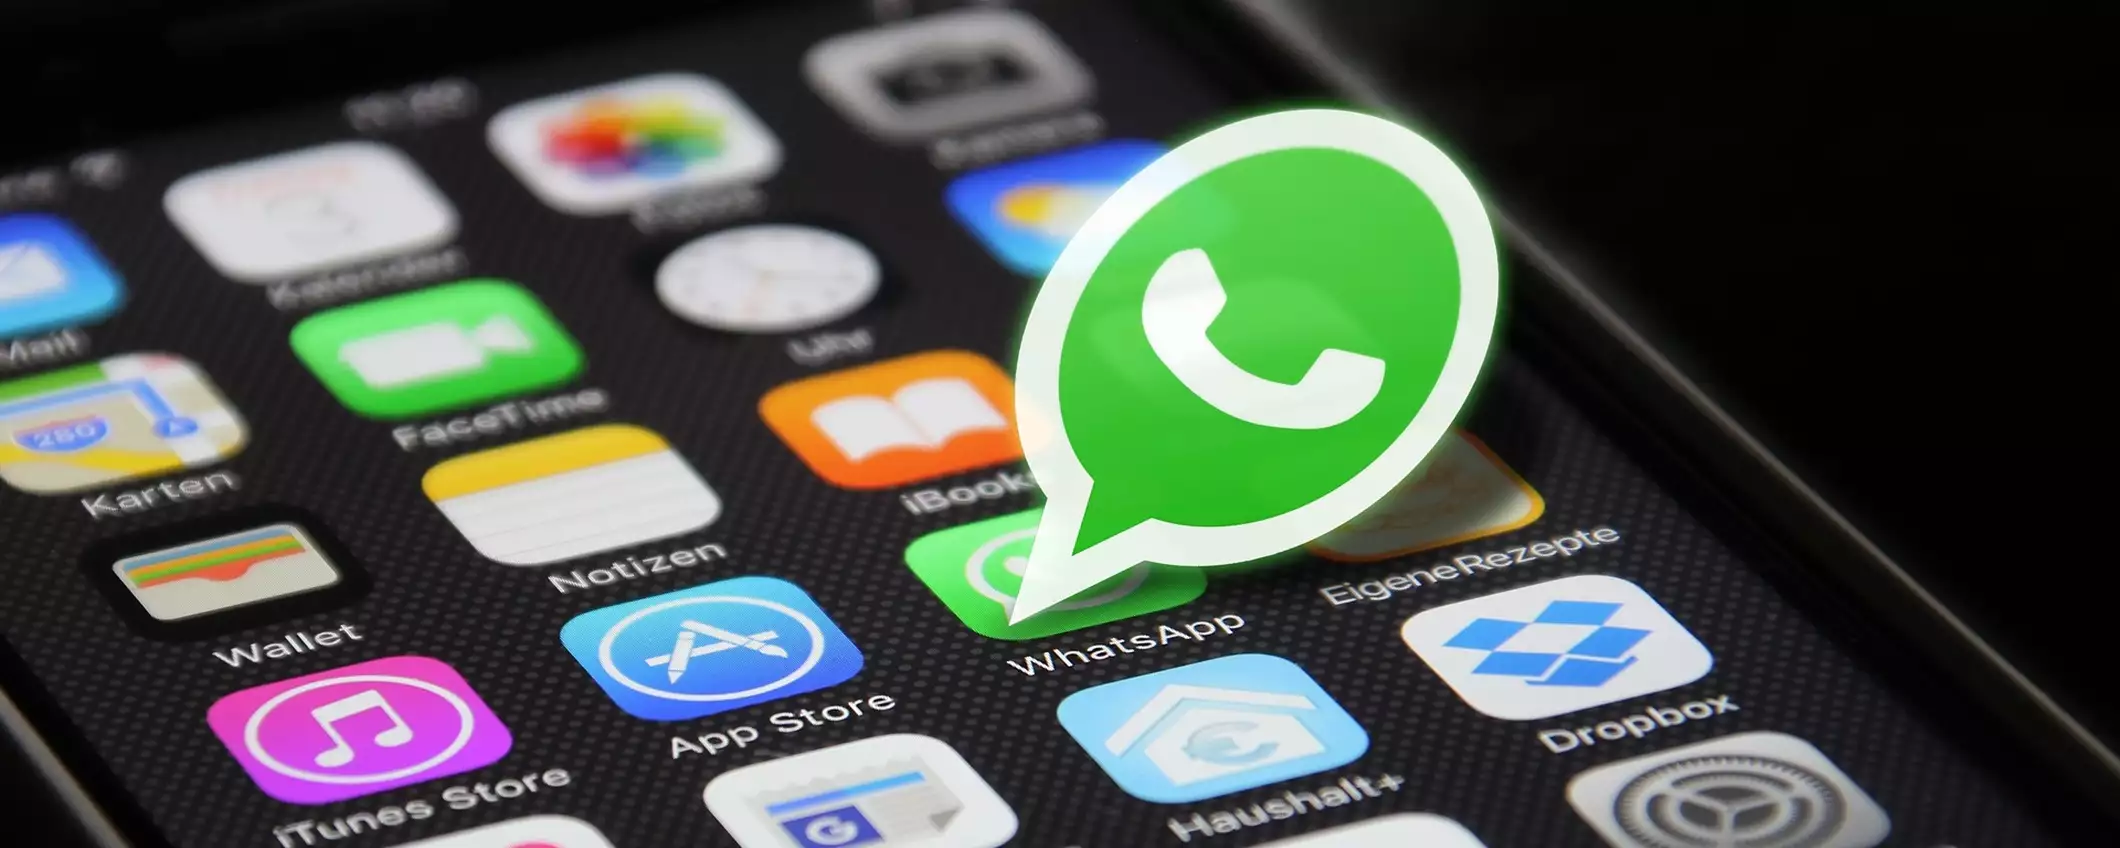 Come modificare i messaggi su WhatsApp